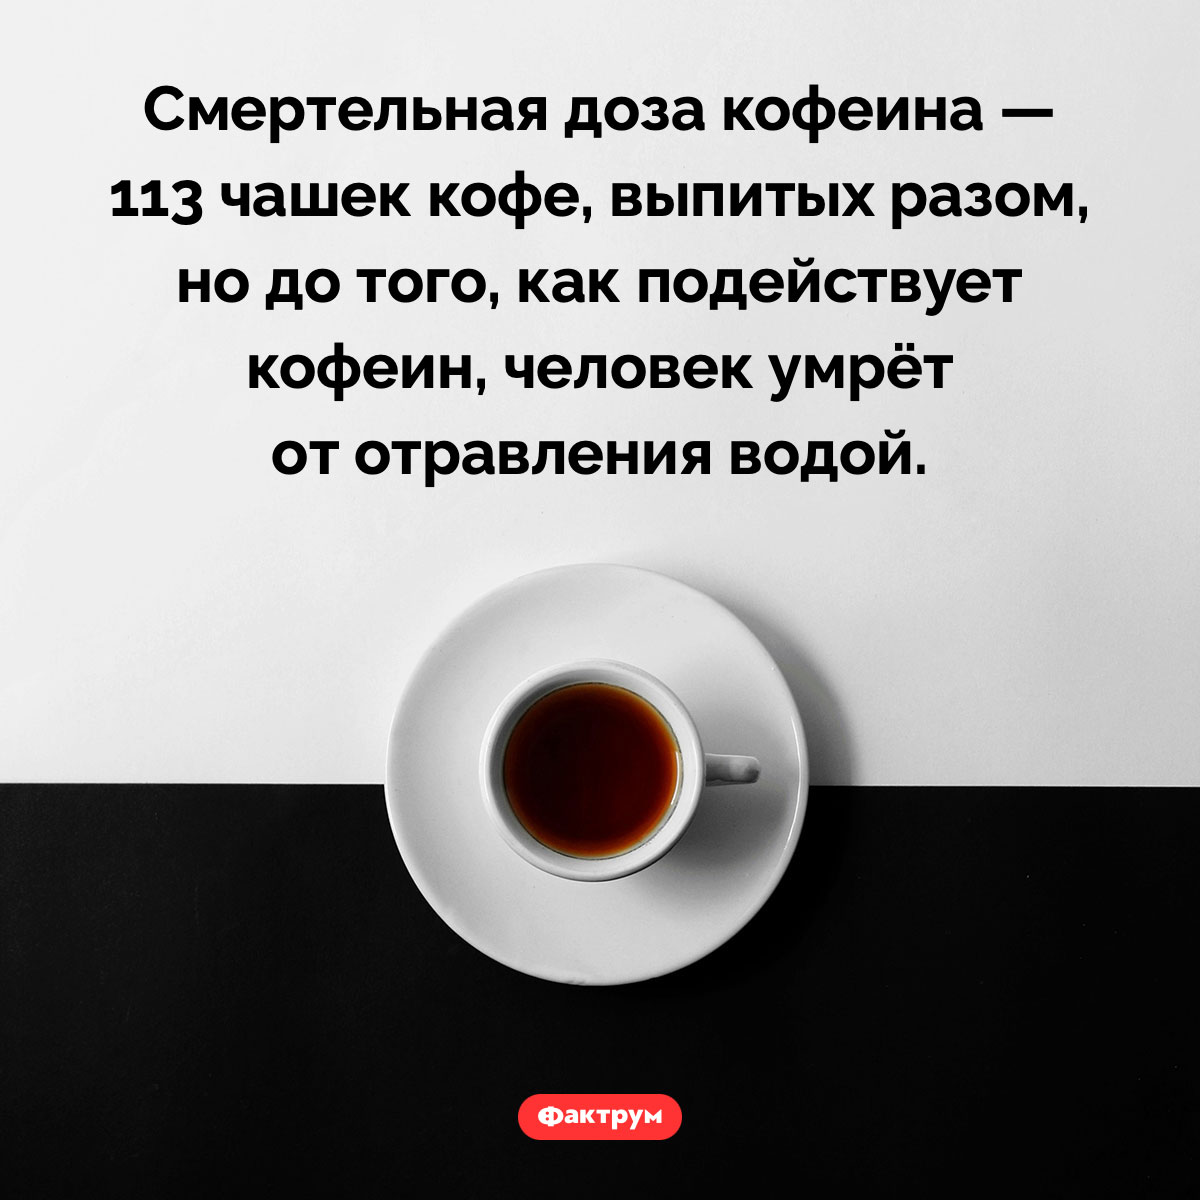 Невозможно выпить столько чашек кофе, чтобы фатально отравиться кофеином. Смертельная доза кофеина — 113 чашек кофе, выпитых разом, но до того, как подействует кофеин, человек умрёт от отравления водой.